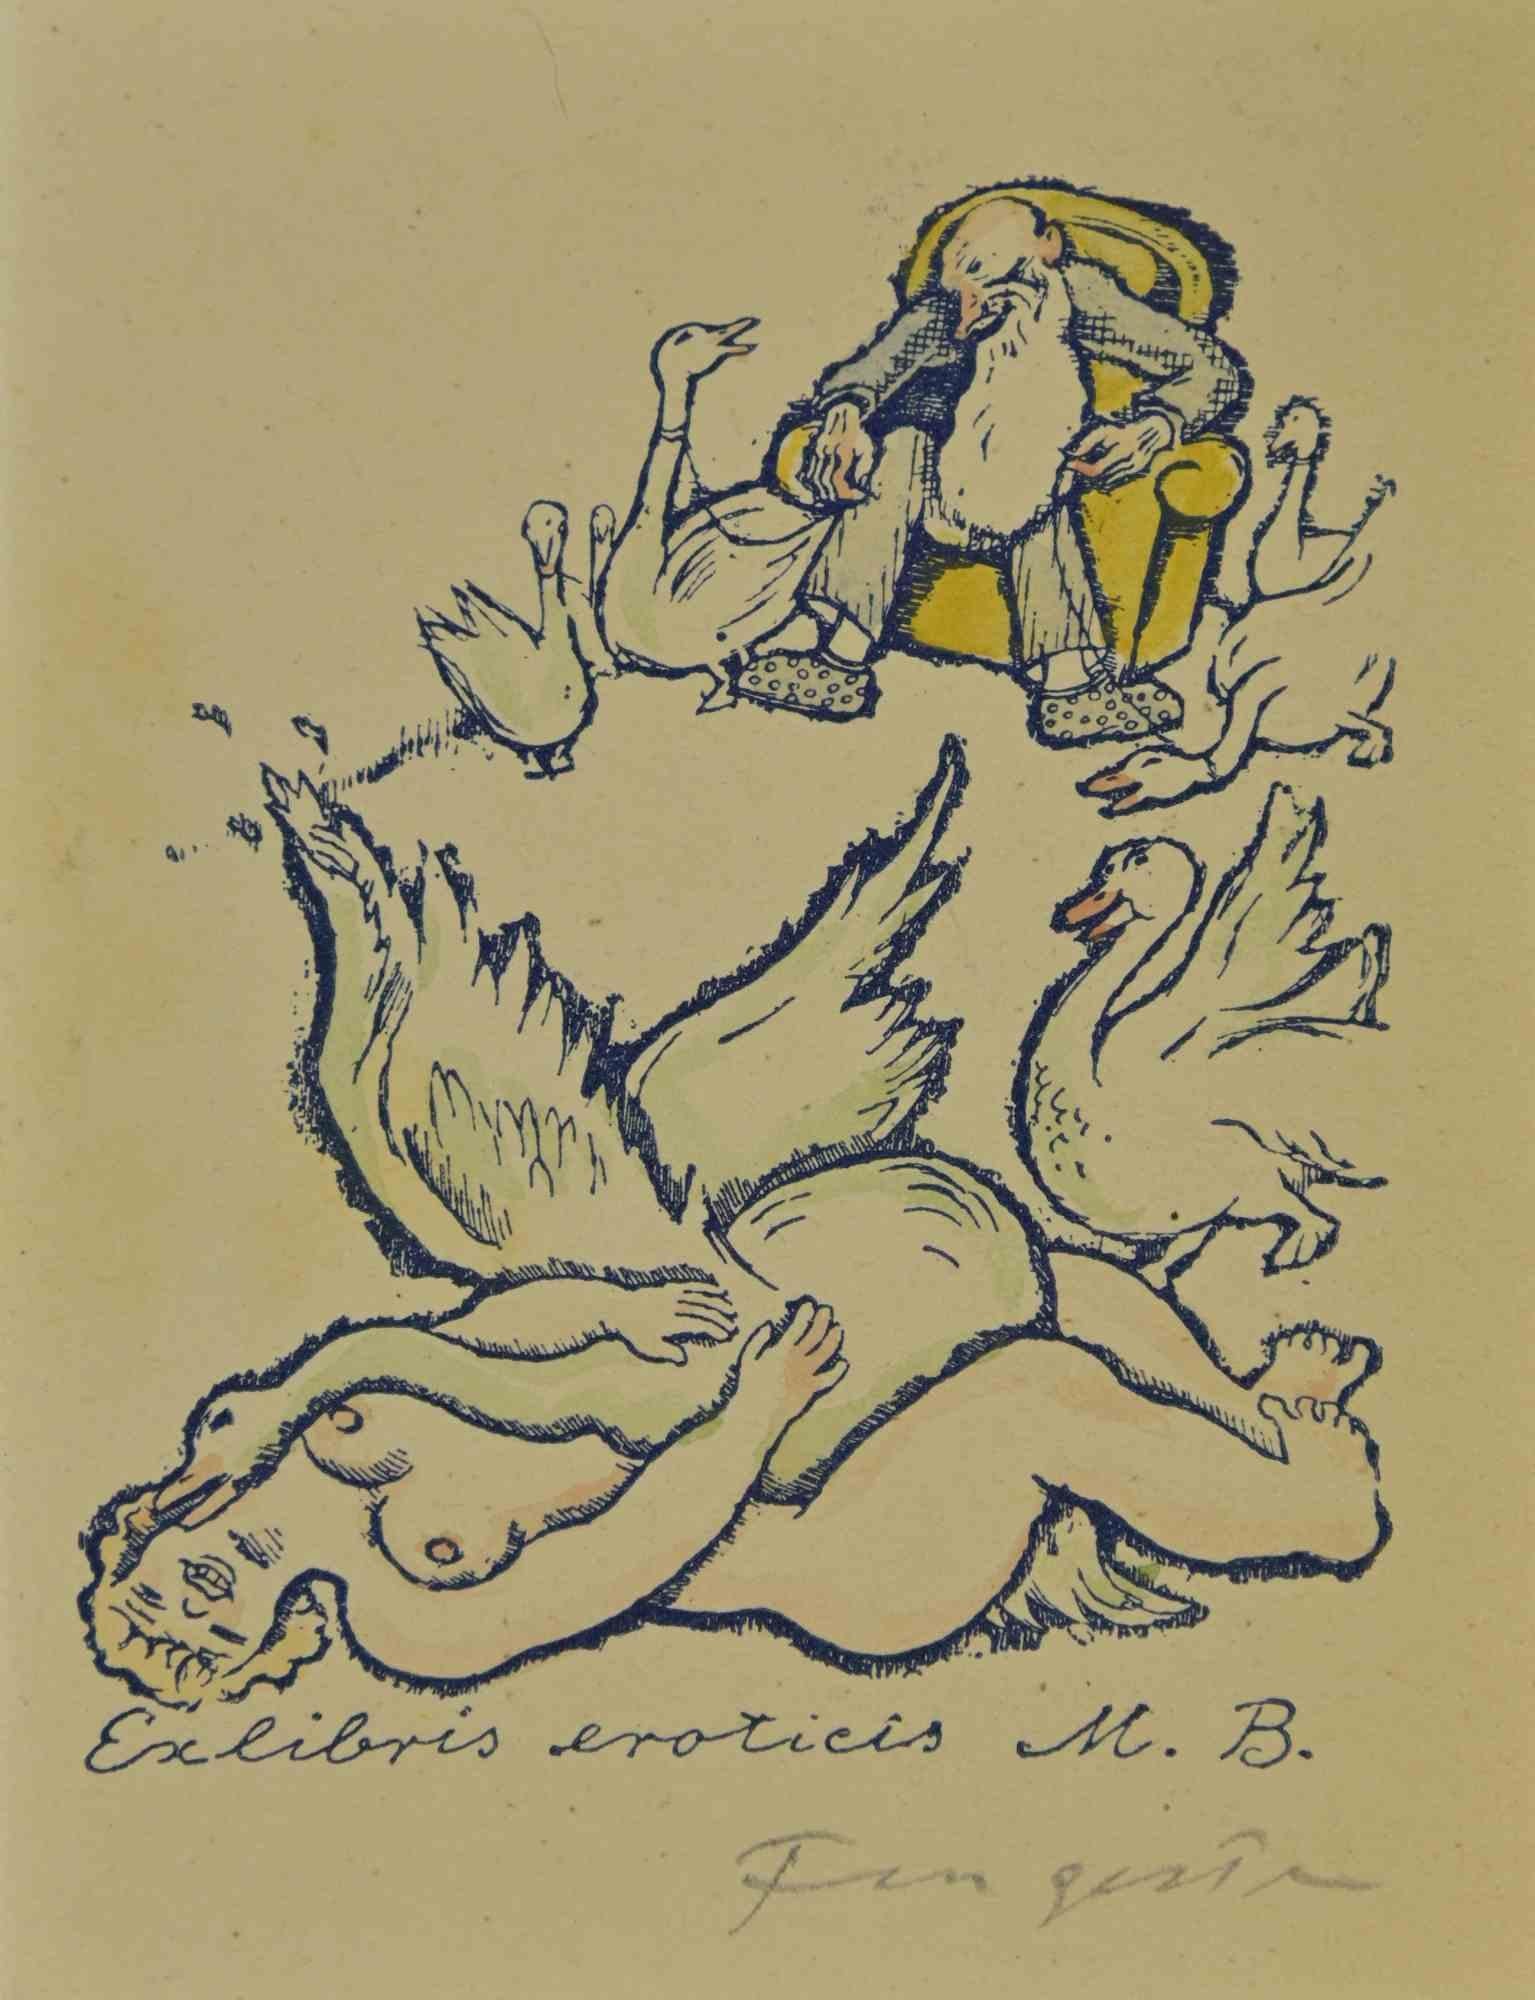 Ex Libris - Eroticis M.B. ist ein farbiger Holzschnitt, der von  Michel Fingesten.

Handsigniert am   der untere rechte Rand.

Gute Bedingungen.

Michel Fingesten (1884 - 1943) war ein tschechischer Maler und Graveur jüdischer Herkunft. Er gilt als